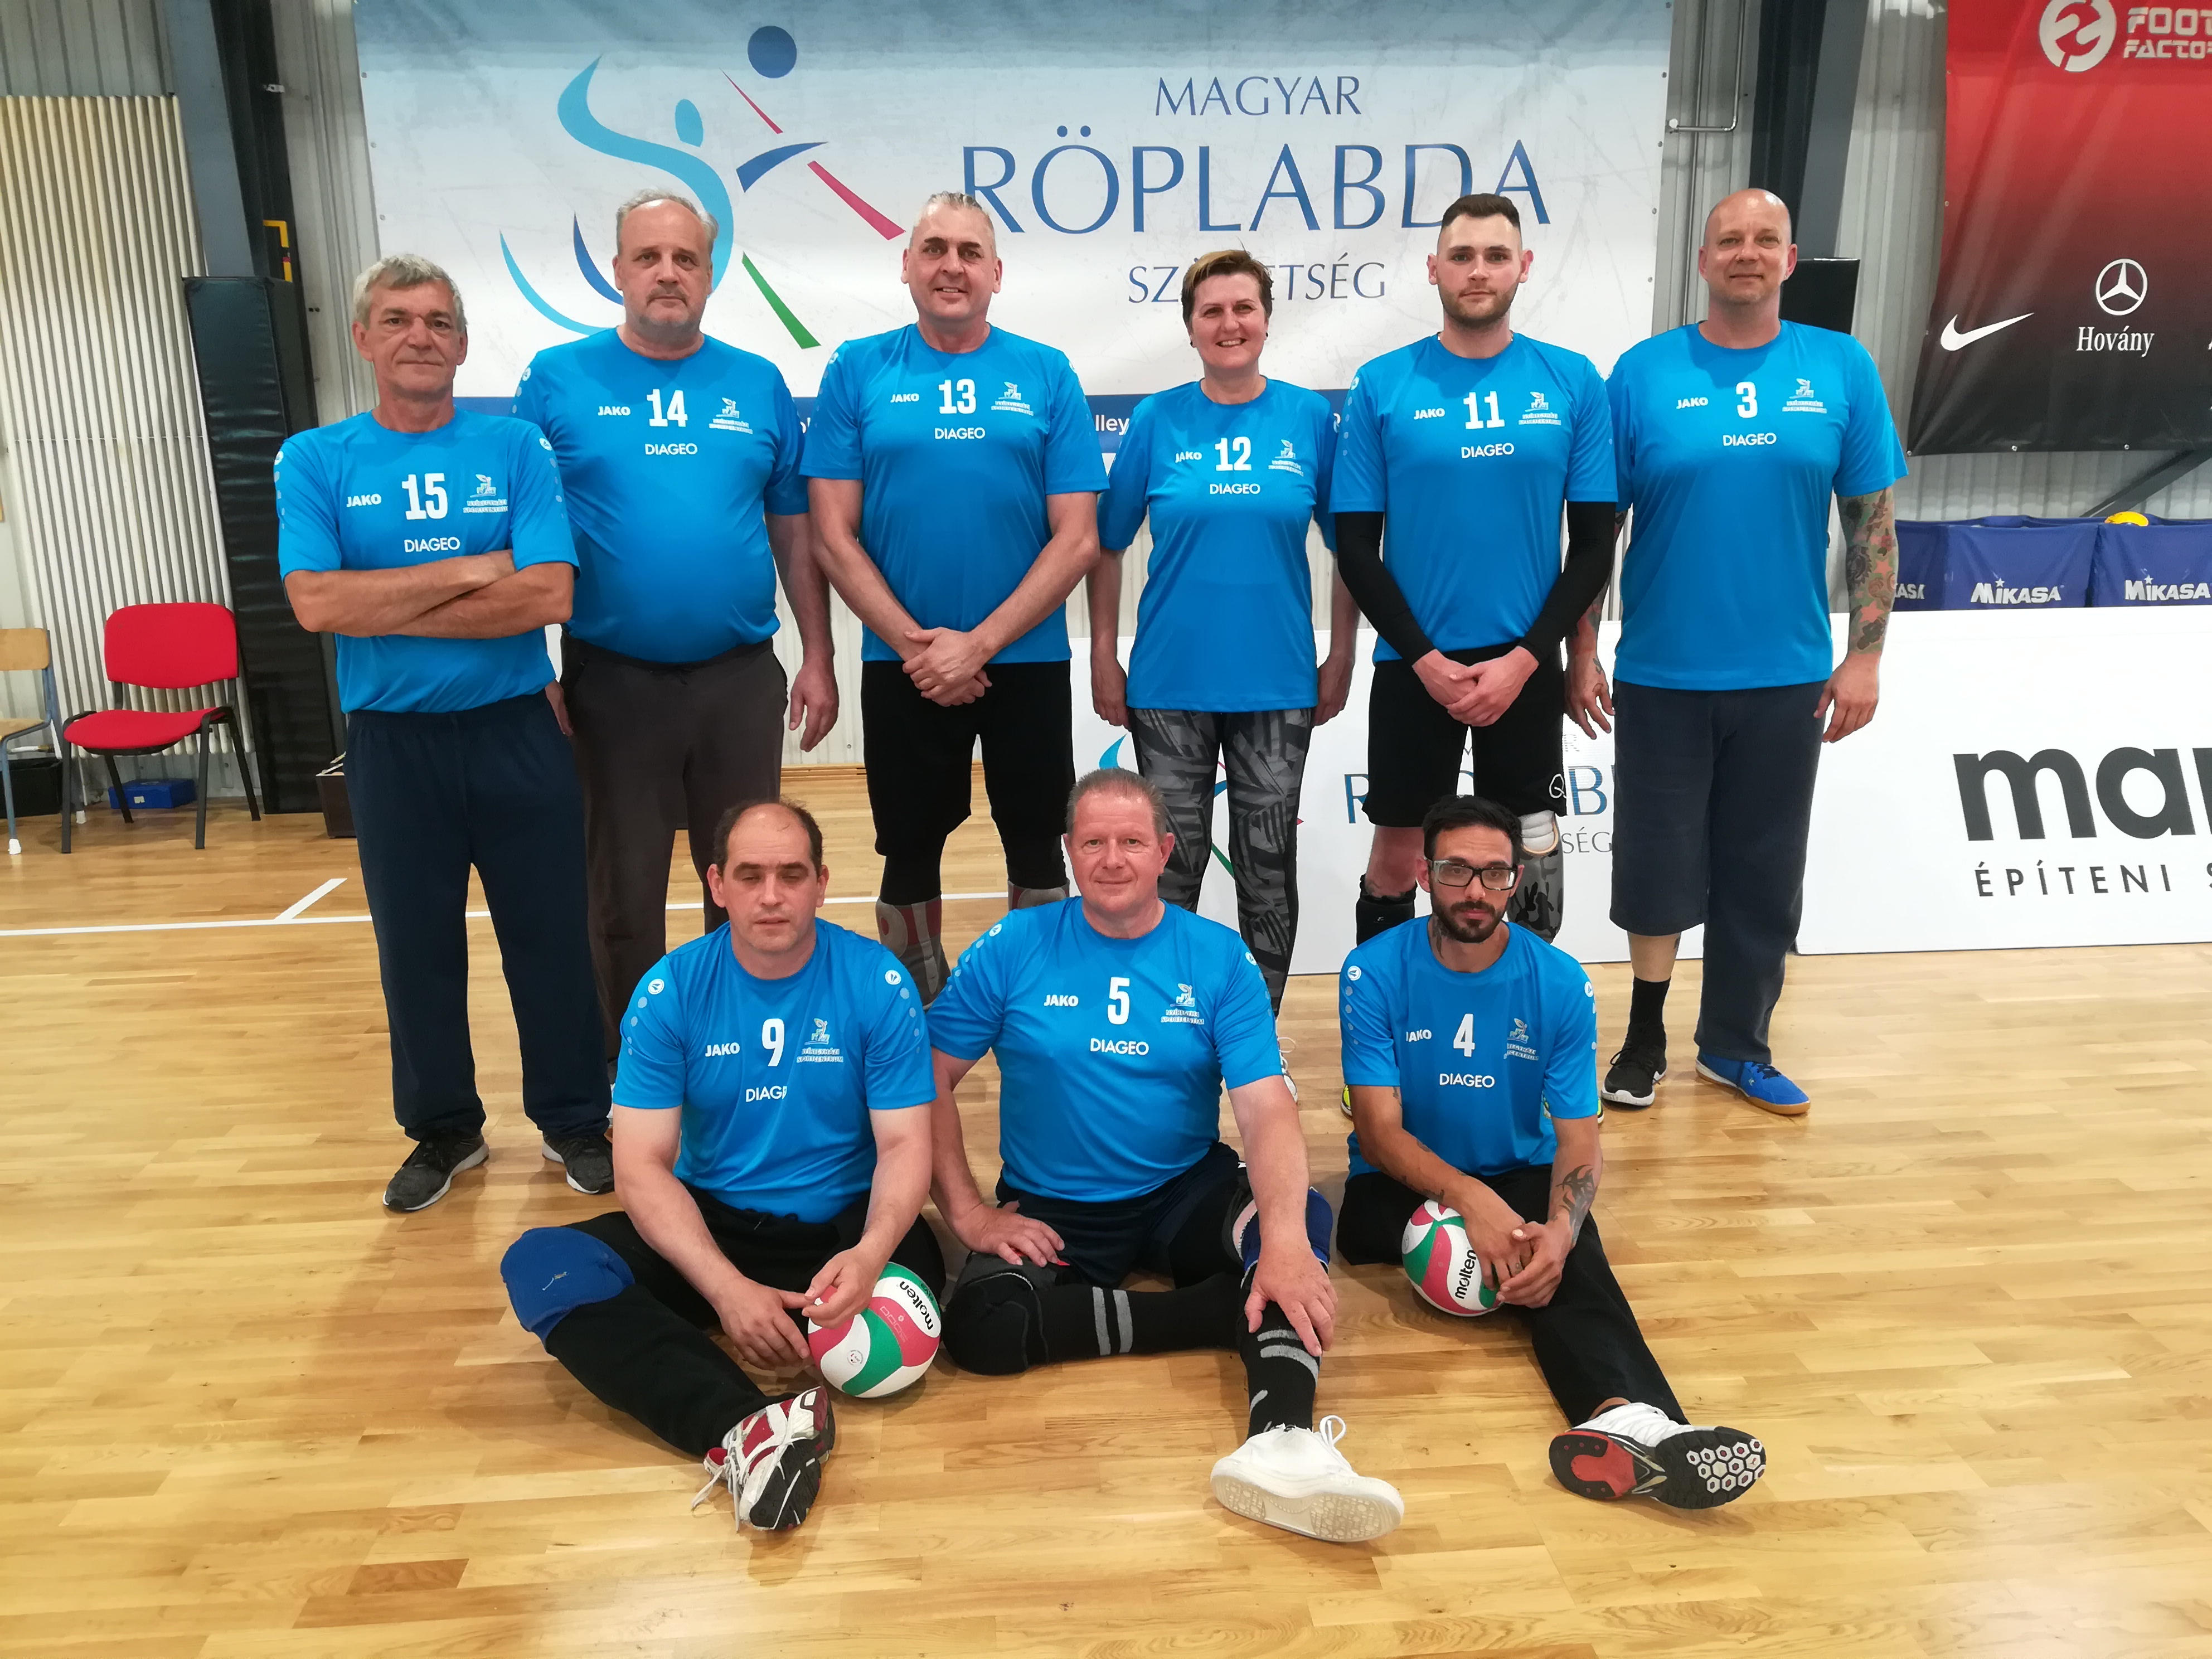 Magyar Kupa győztes lett a Nyíregyházi Sportcentrum ülőröplabda csapata